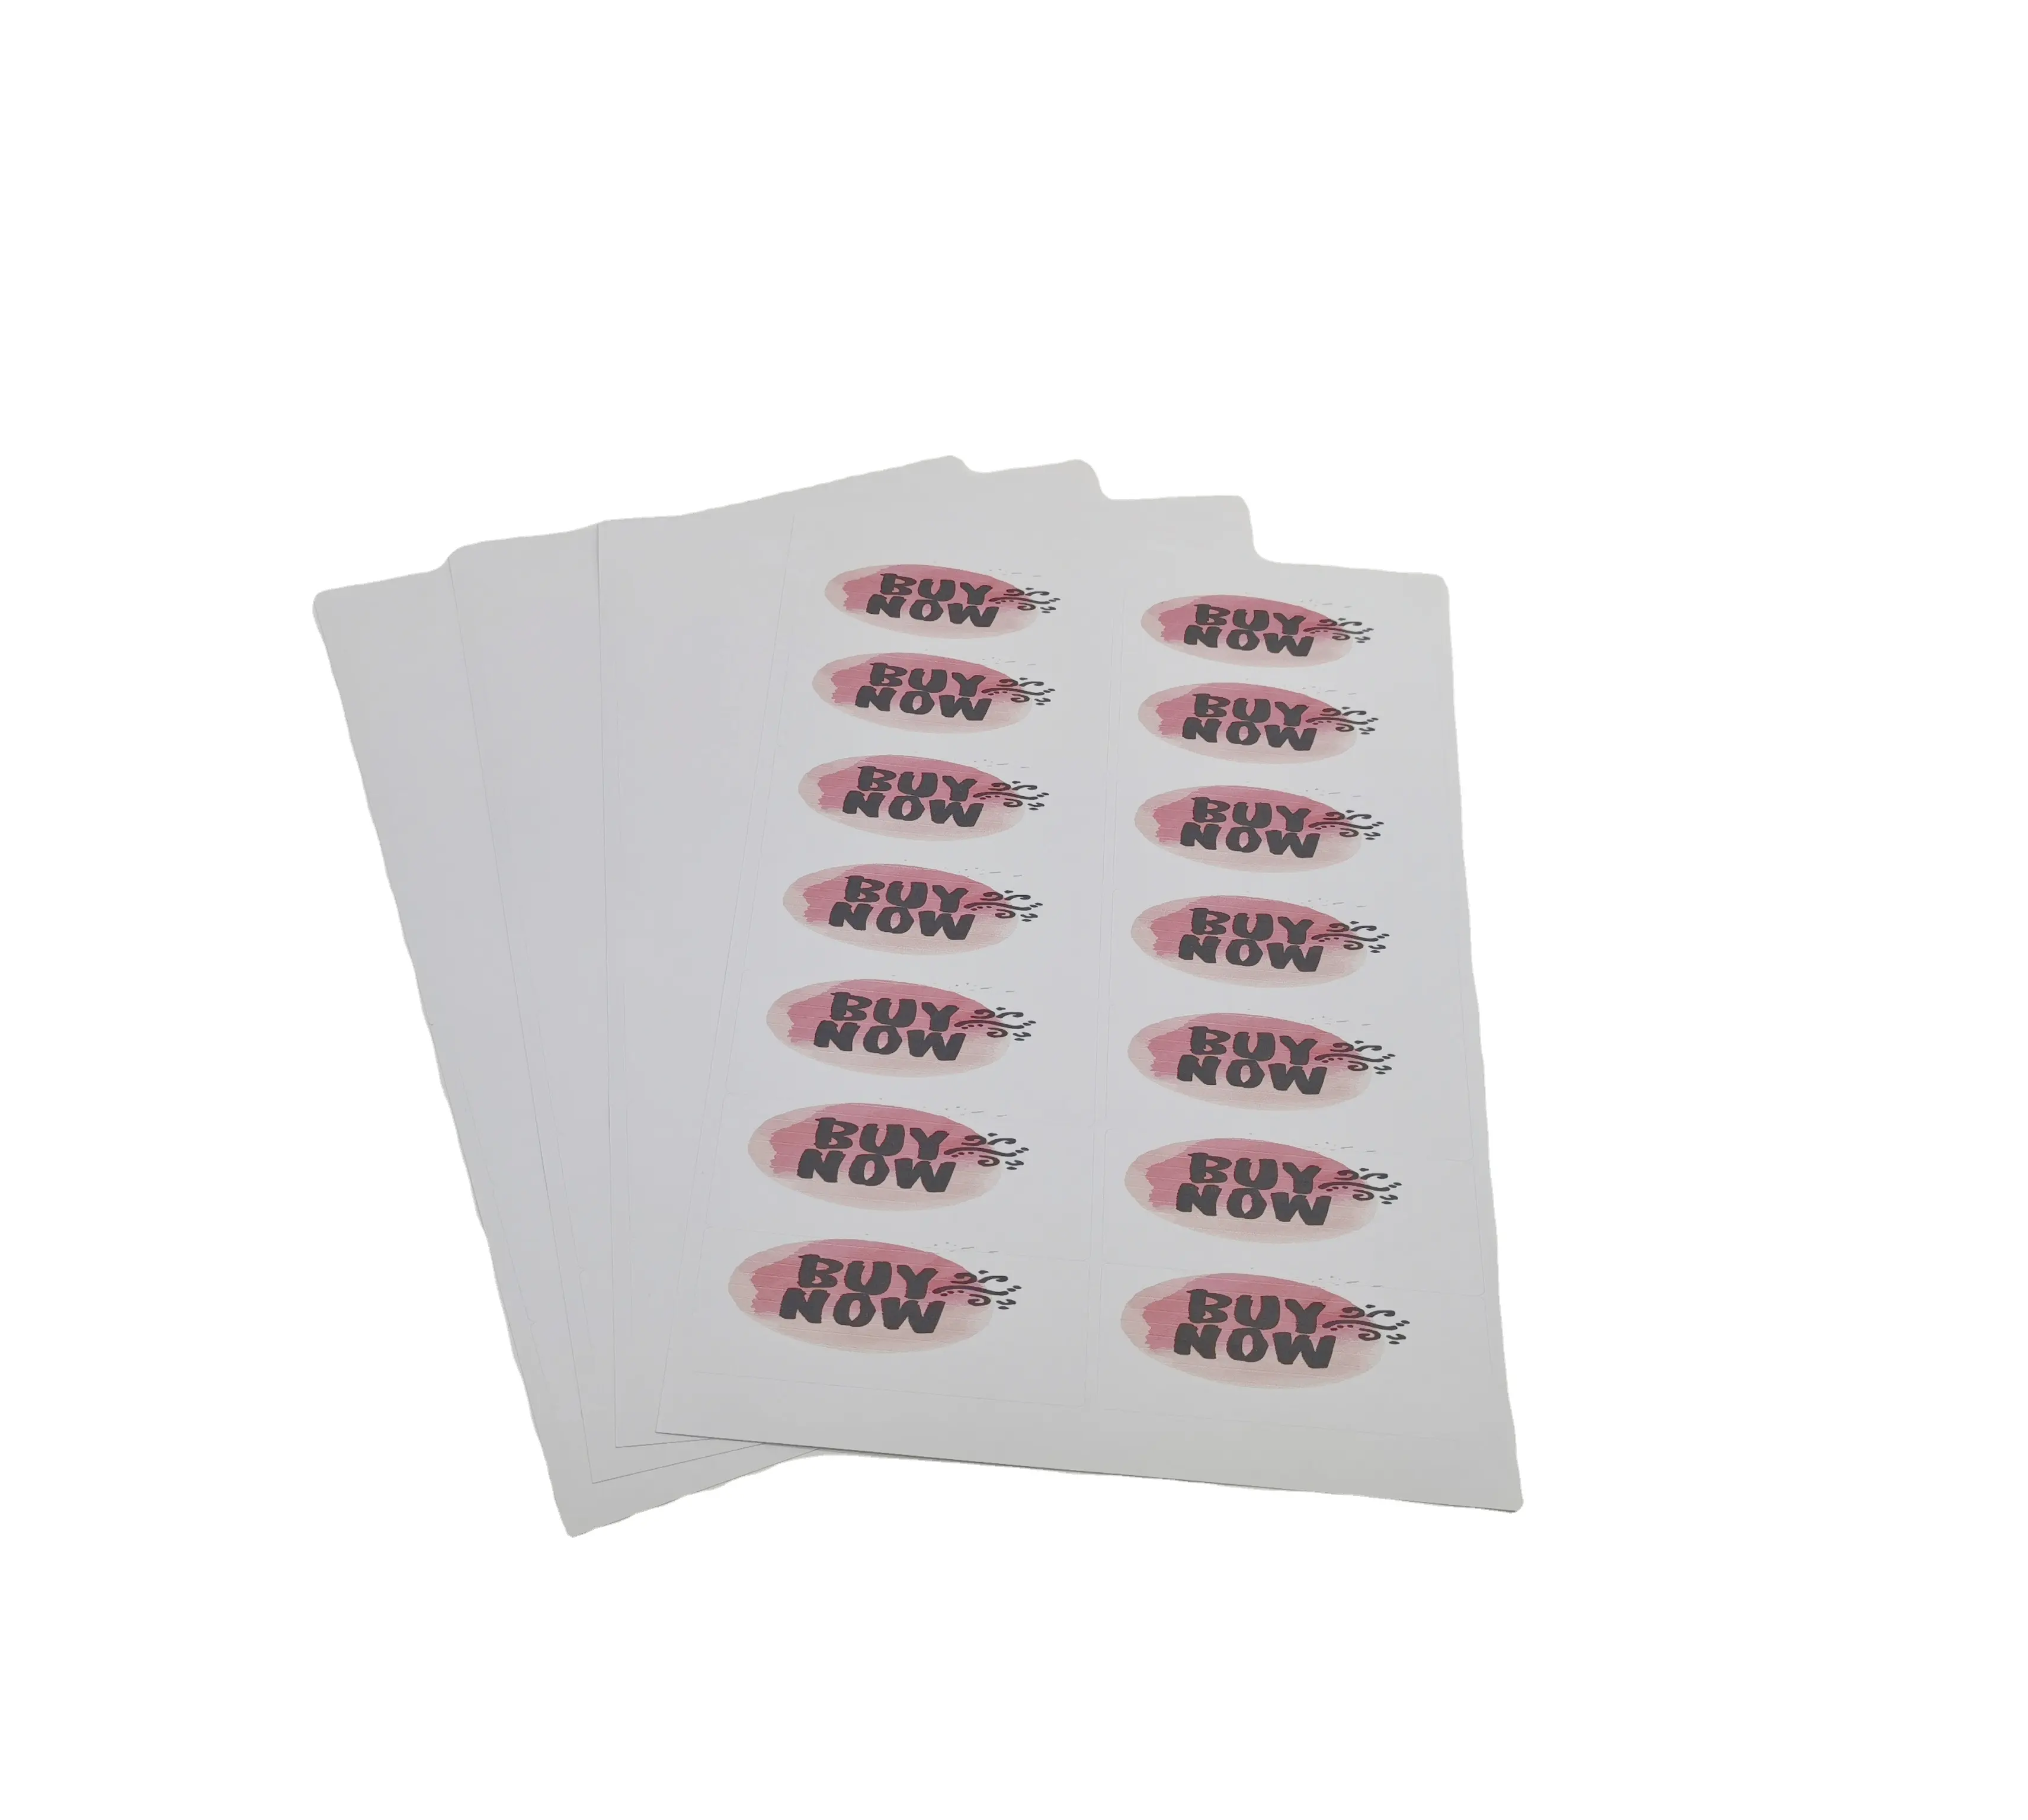 Su geçirmez etiket A4 boyutu beyaz mat 14 parça nakliye/adres/posta etiketleri lazer/mürekkep püskürtmeli yazıcı termal kağıt